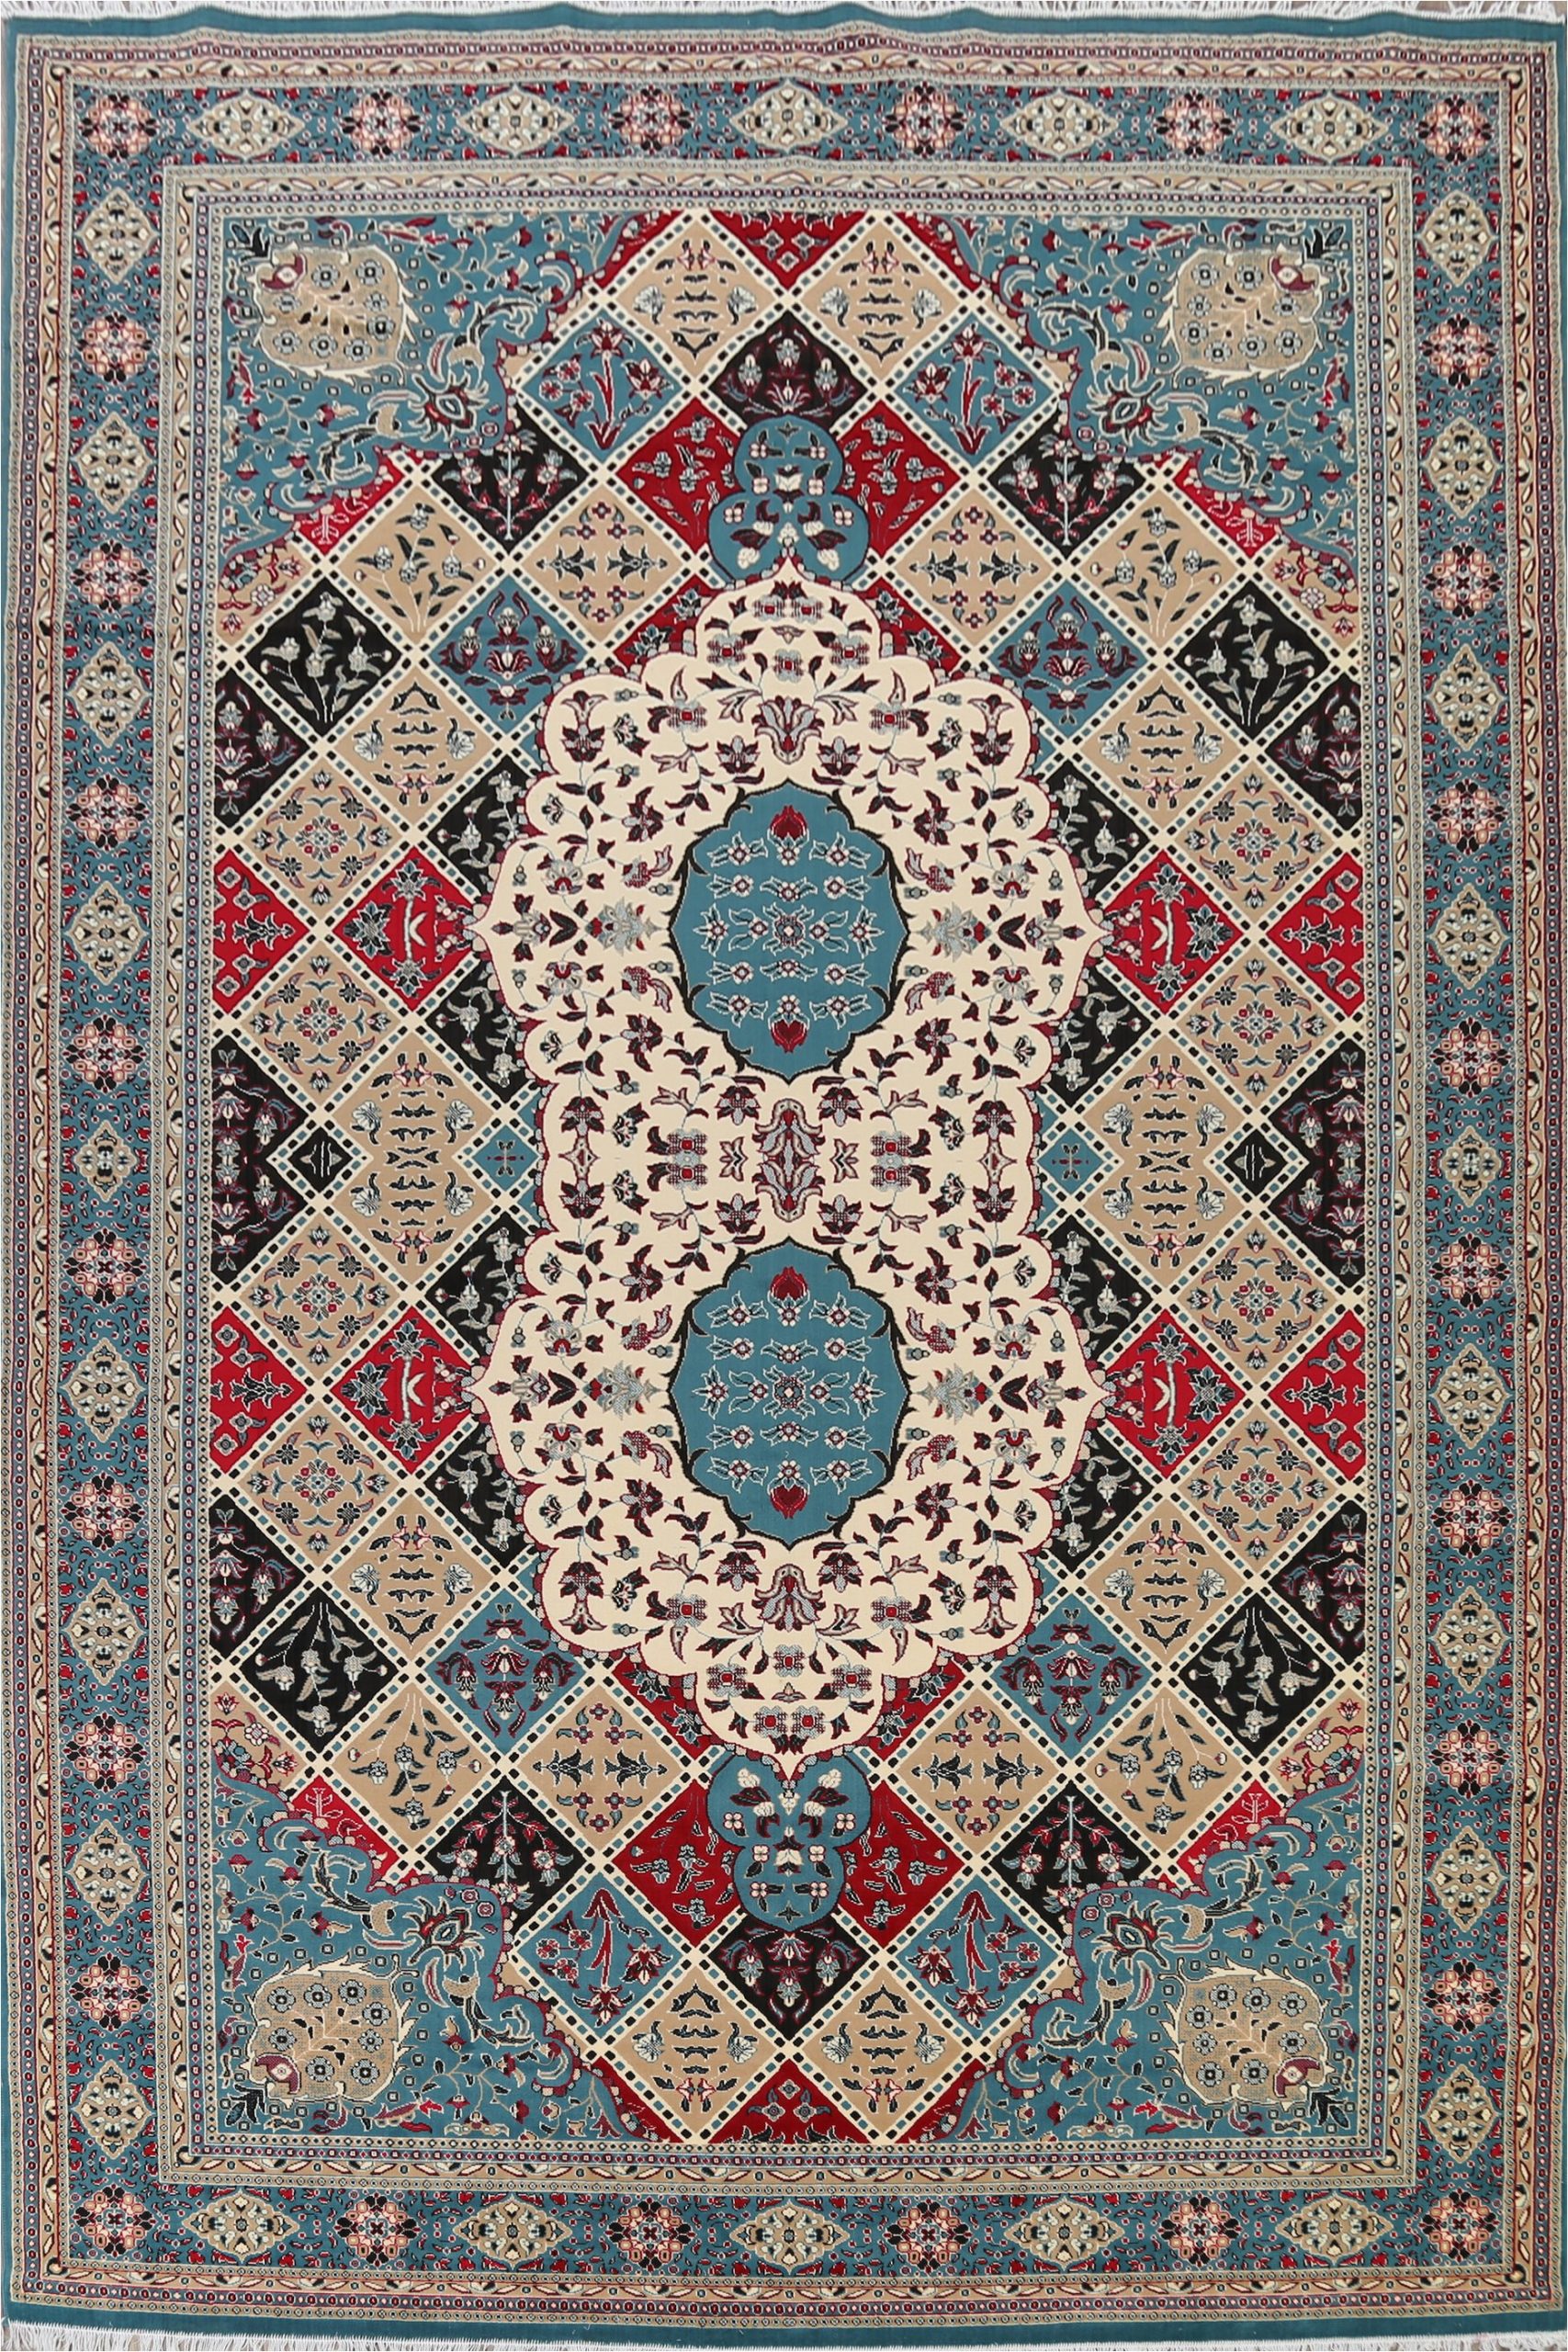 10 X 17 area Rugs Large Geometric Turkish oriental area Rug Living Room Carpet 10×17